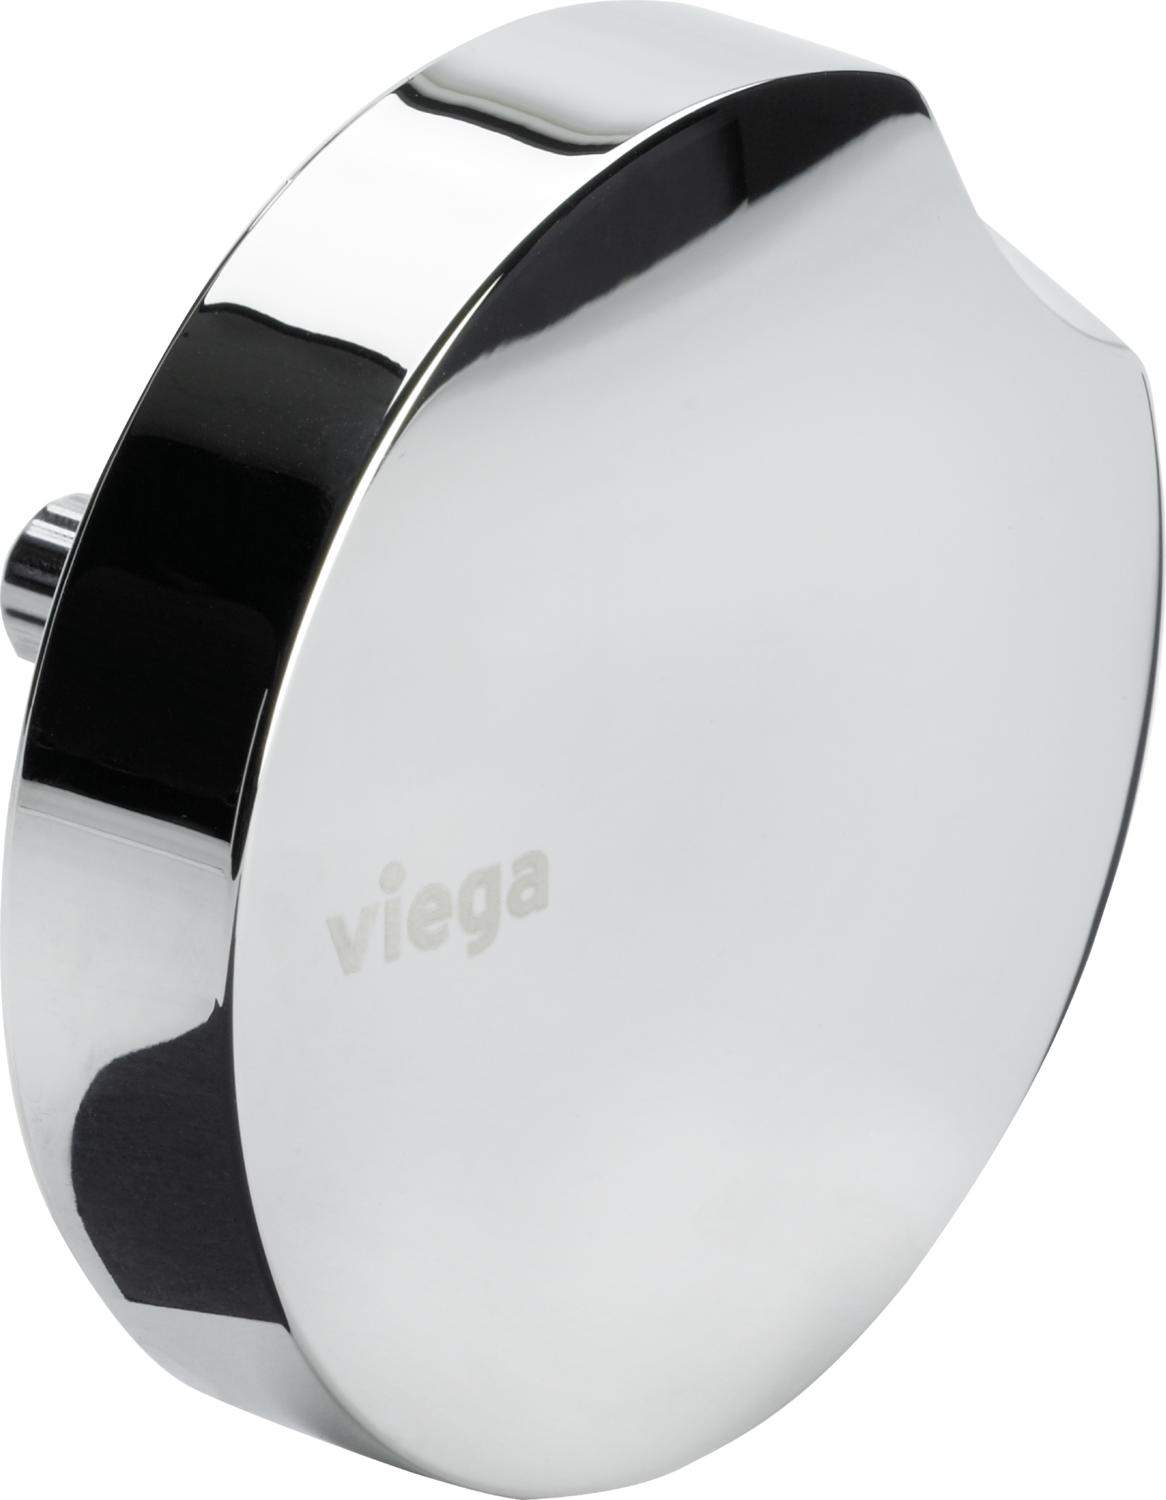 Bathtub waste wheel for VIEGA SIMPLEX model